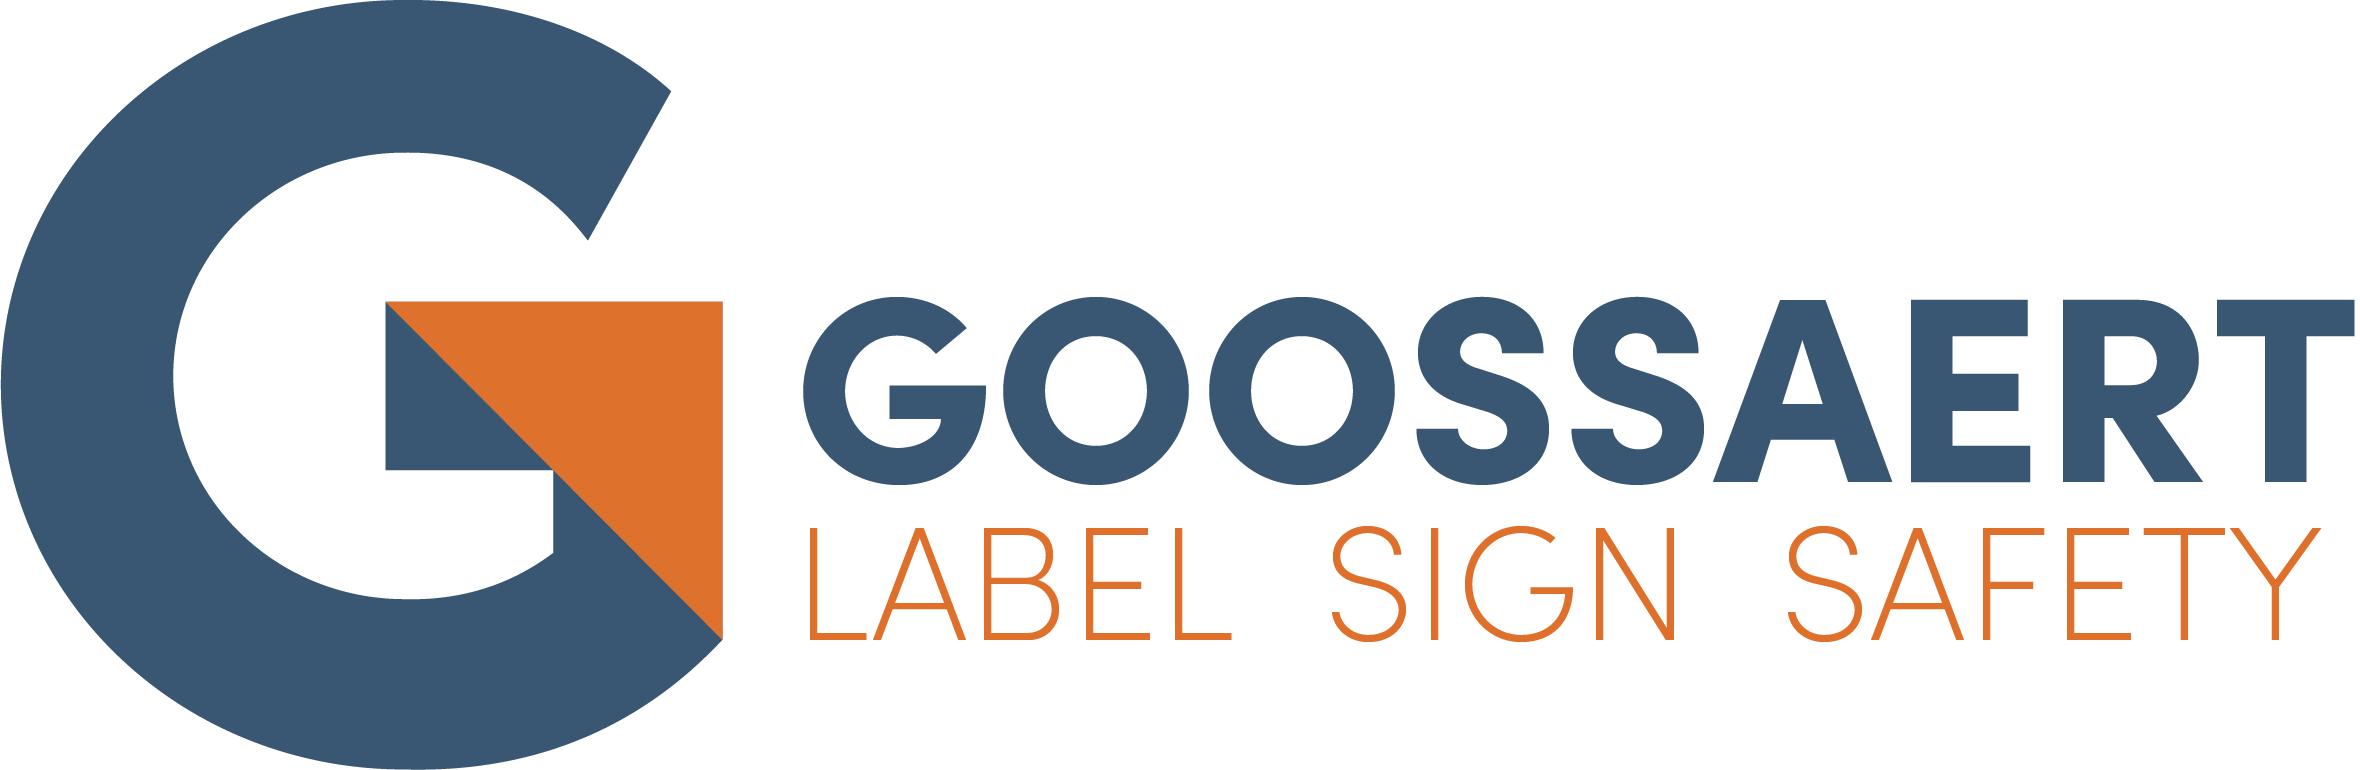 Goossaert logo